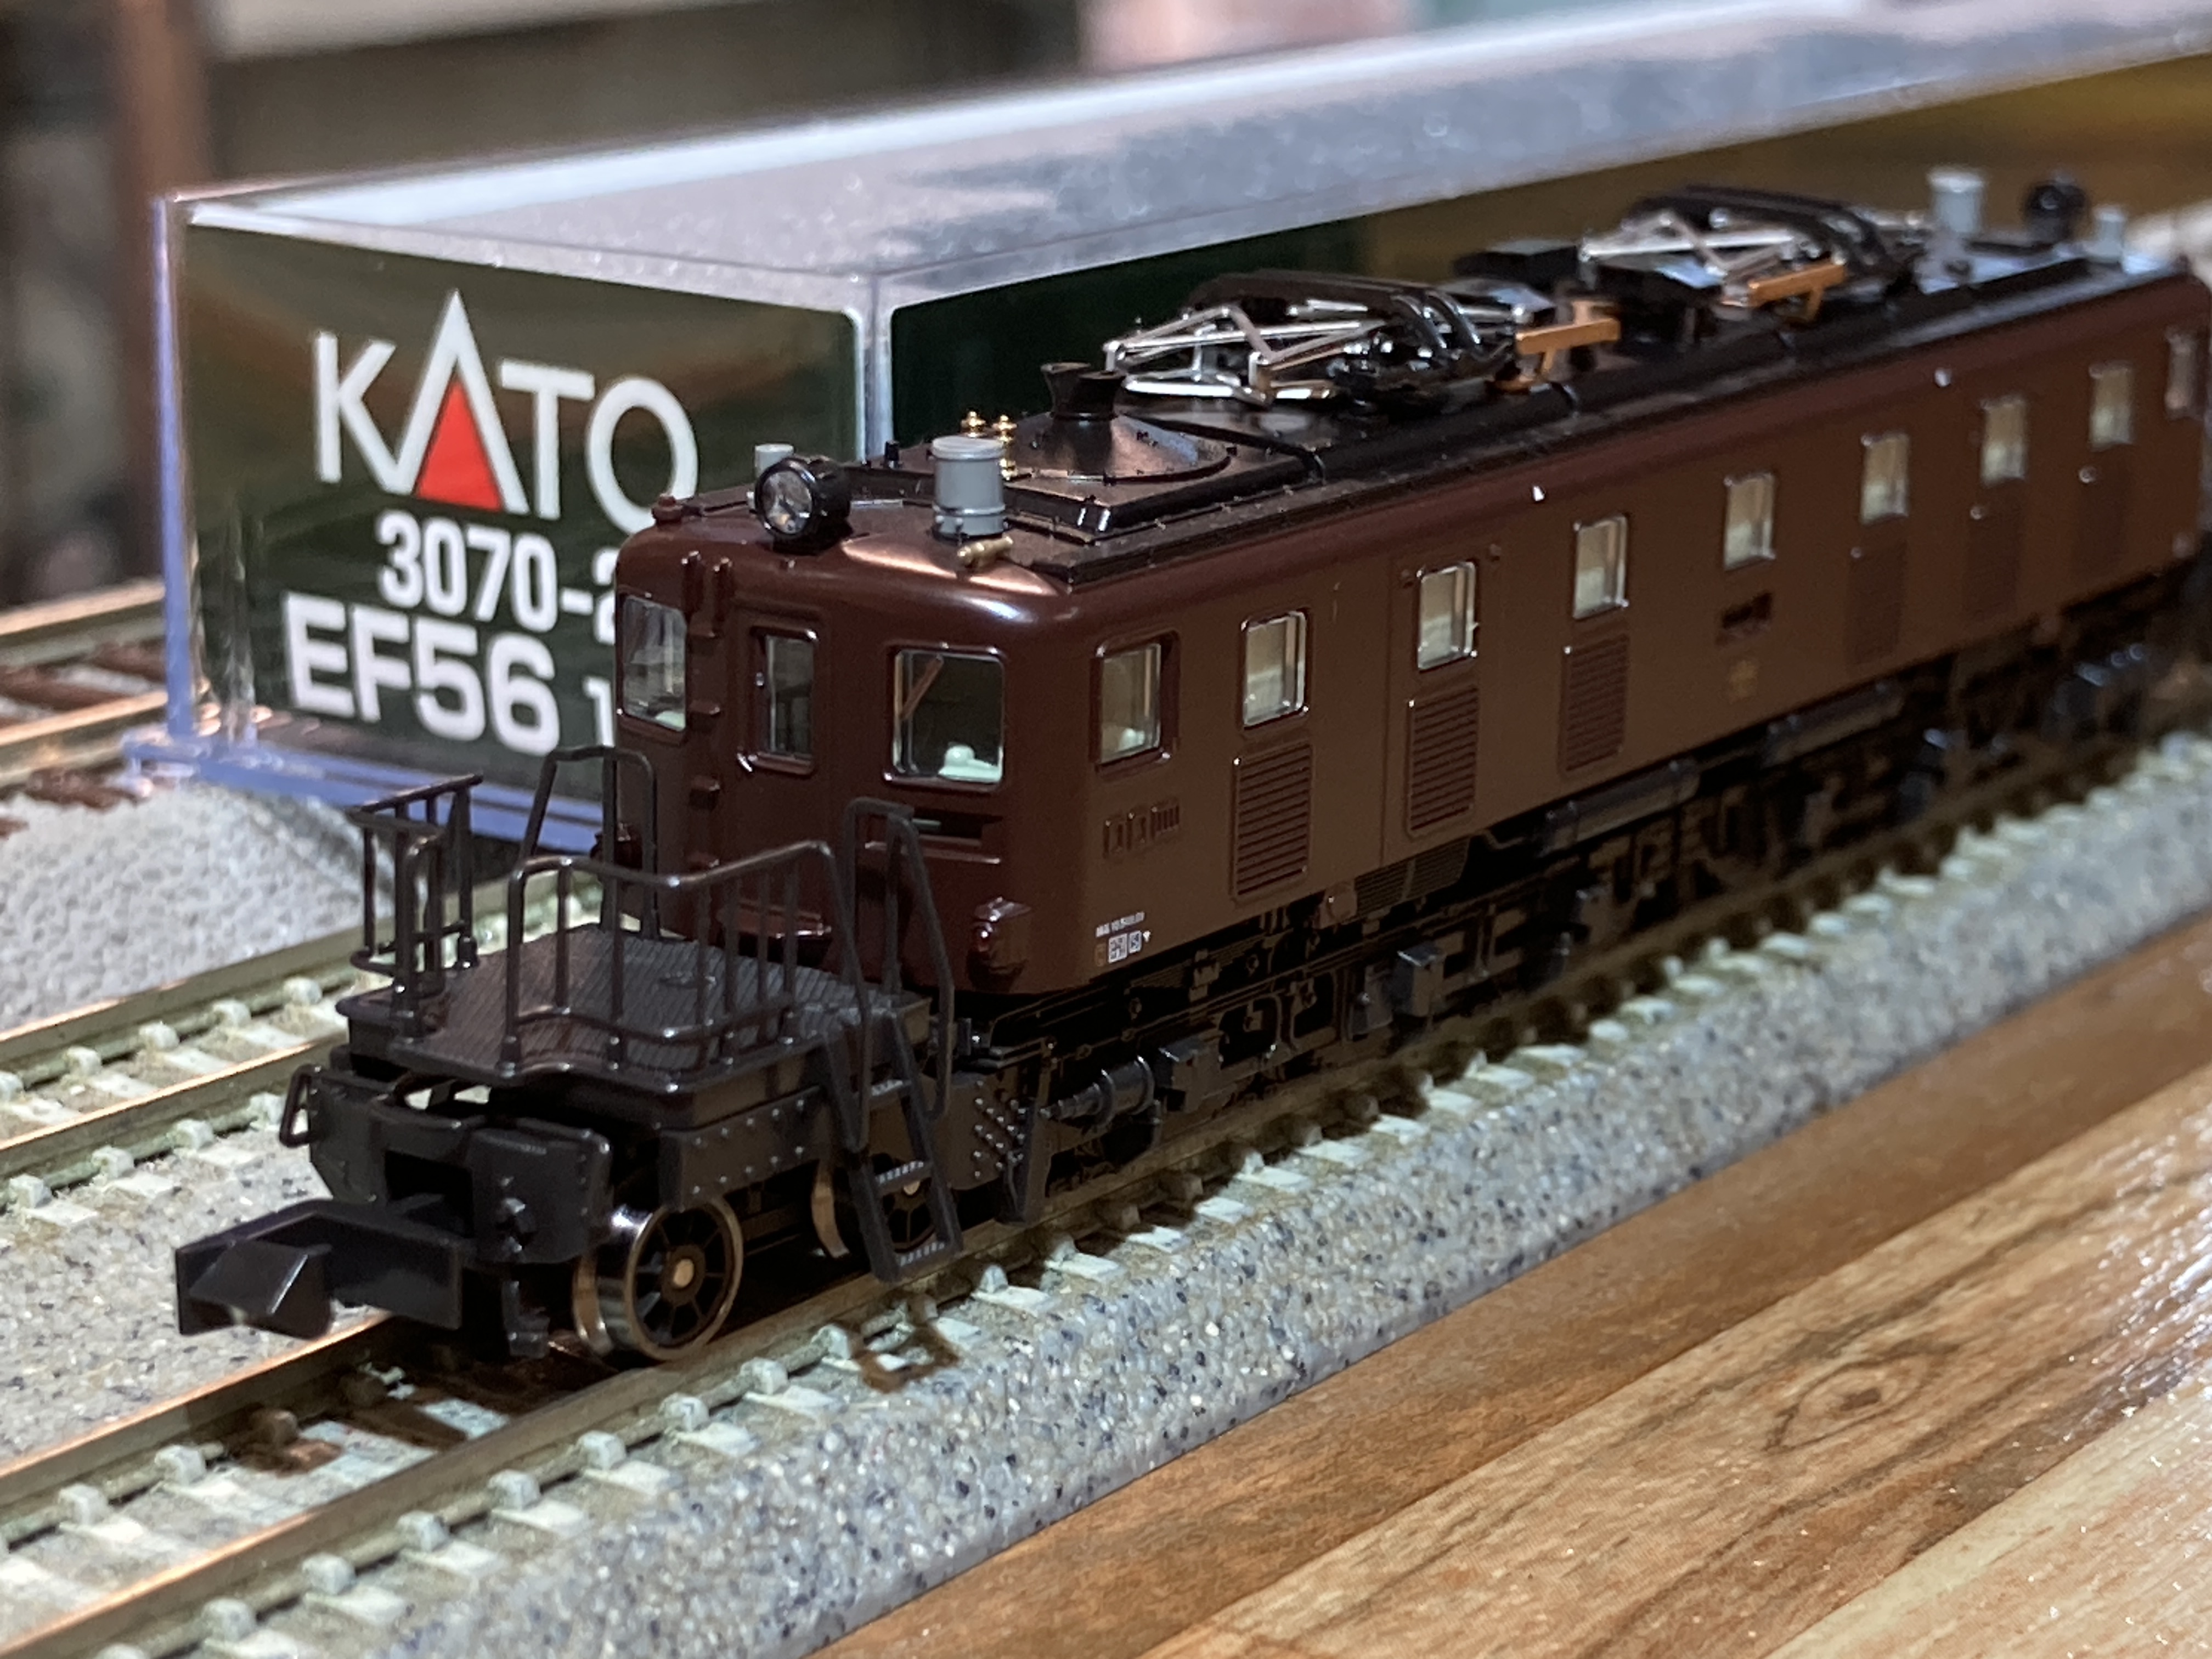 KATO 3070-2 EF56 1次形KATO 3070-2 EF56 1次形電気機関車